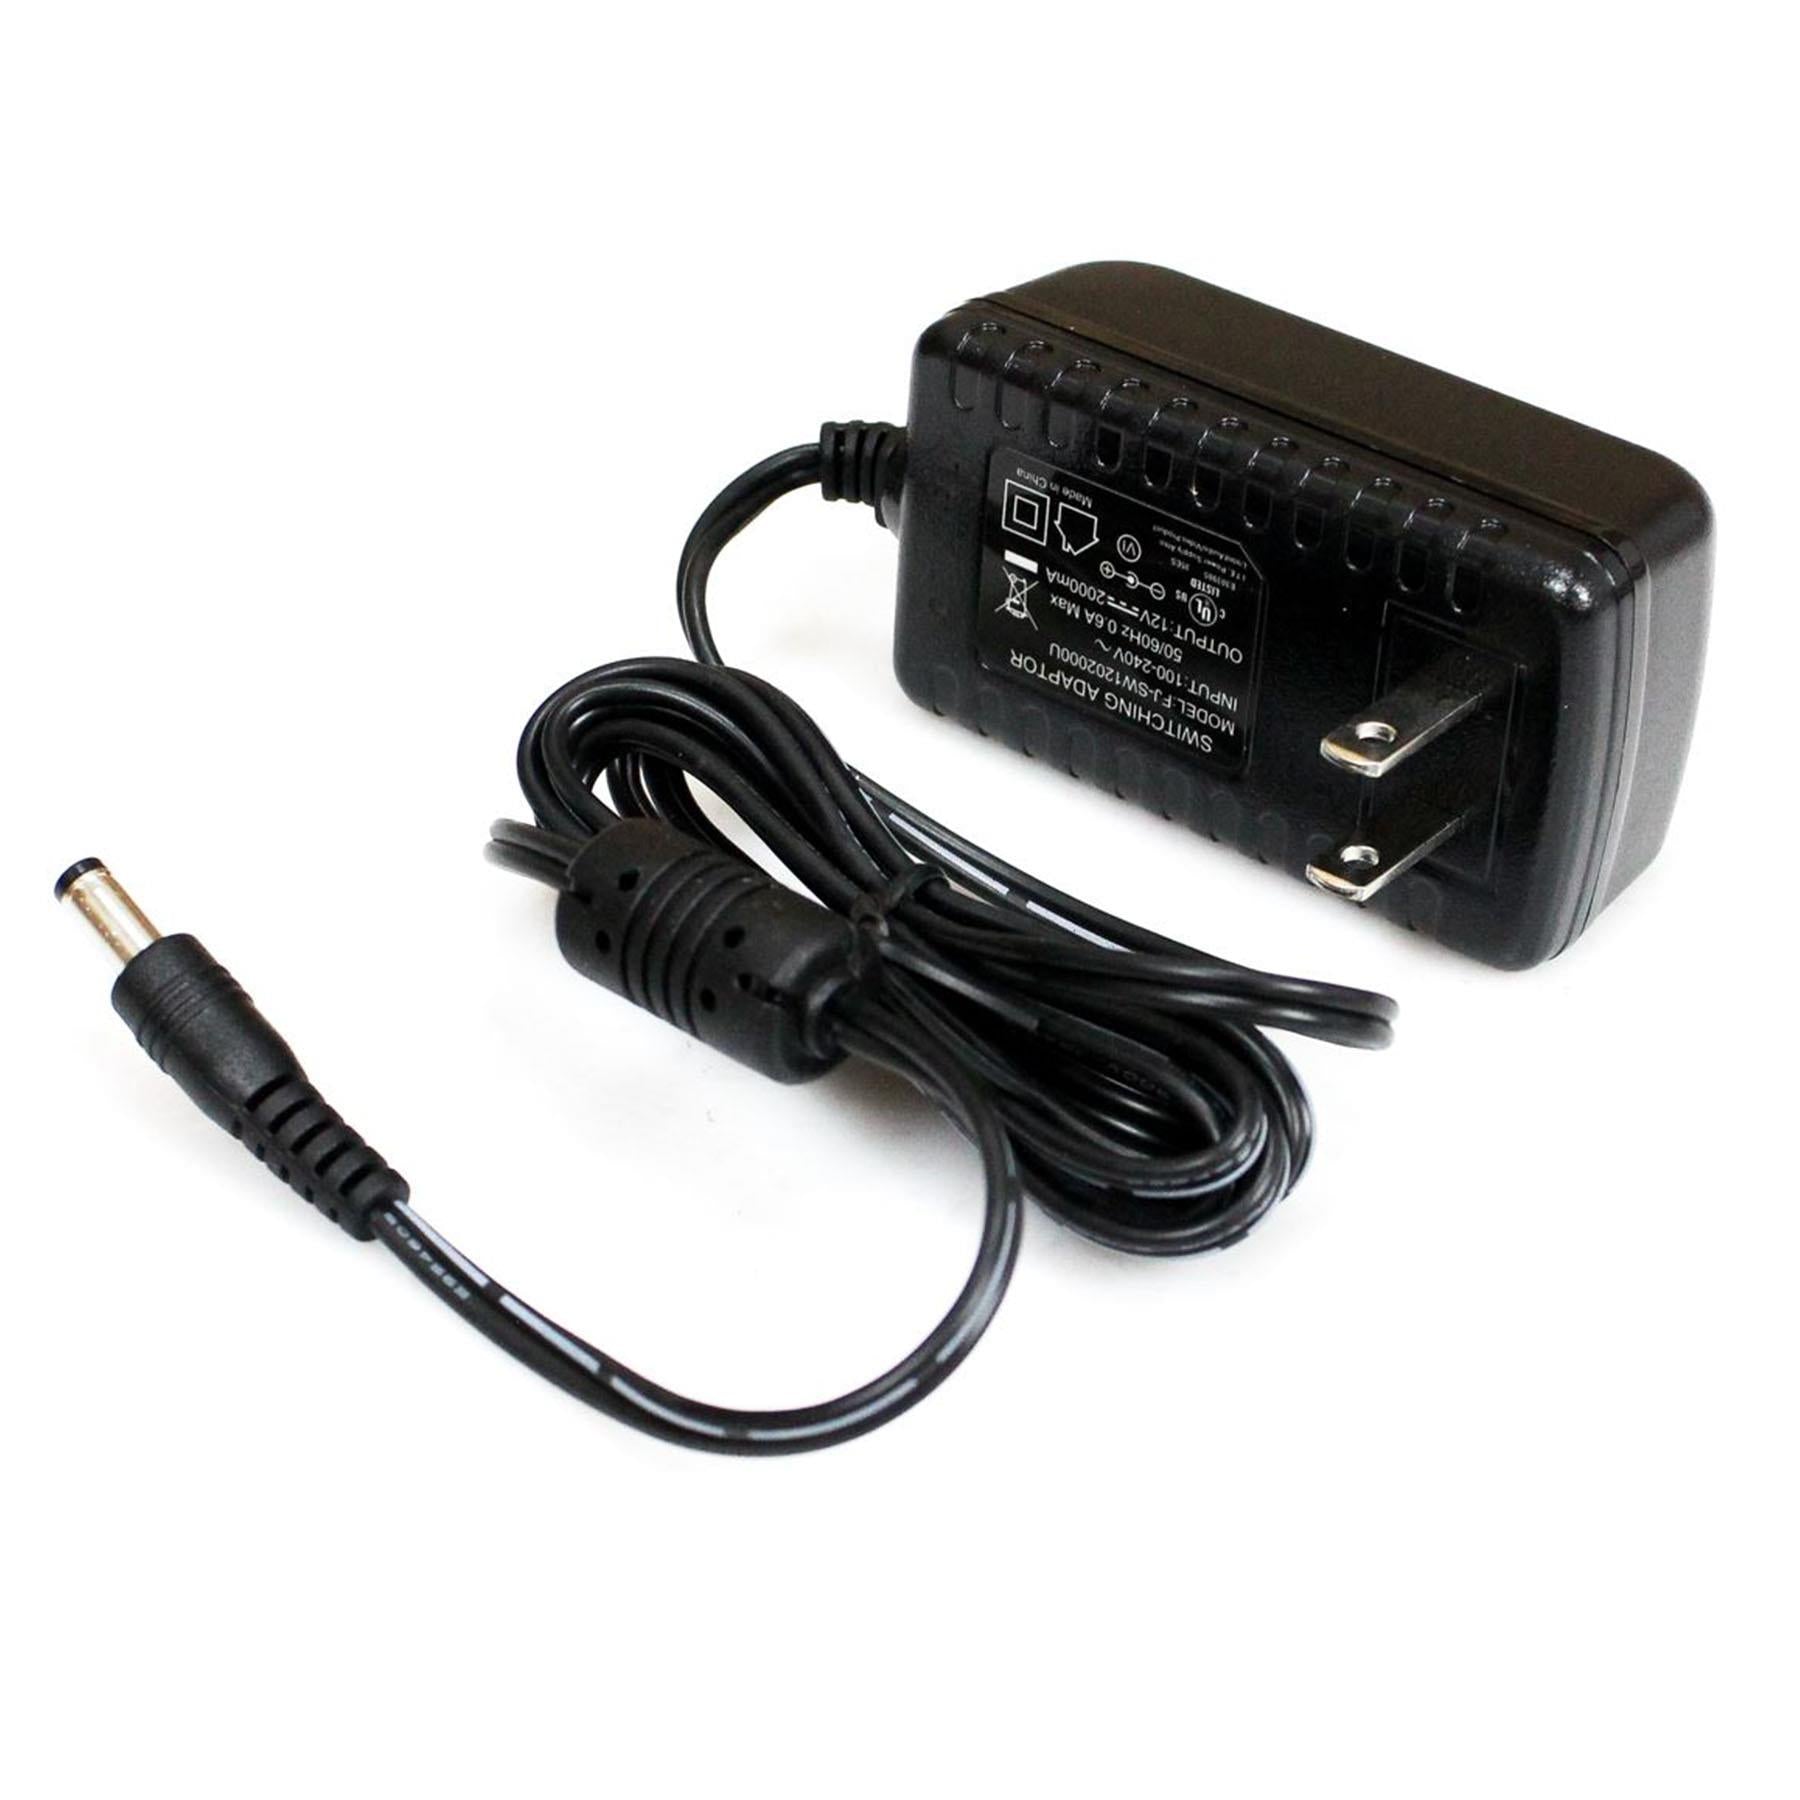 Glad Melodrama postkantoor Alesis Strike Kit / Strike Pro Kit Power Supply Adapter - PSU Replacem -  Pixel Pro Audio